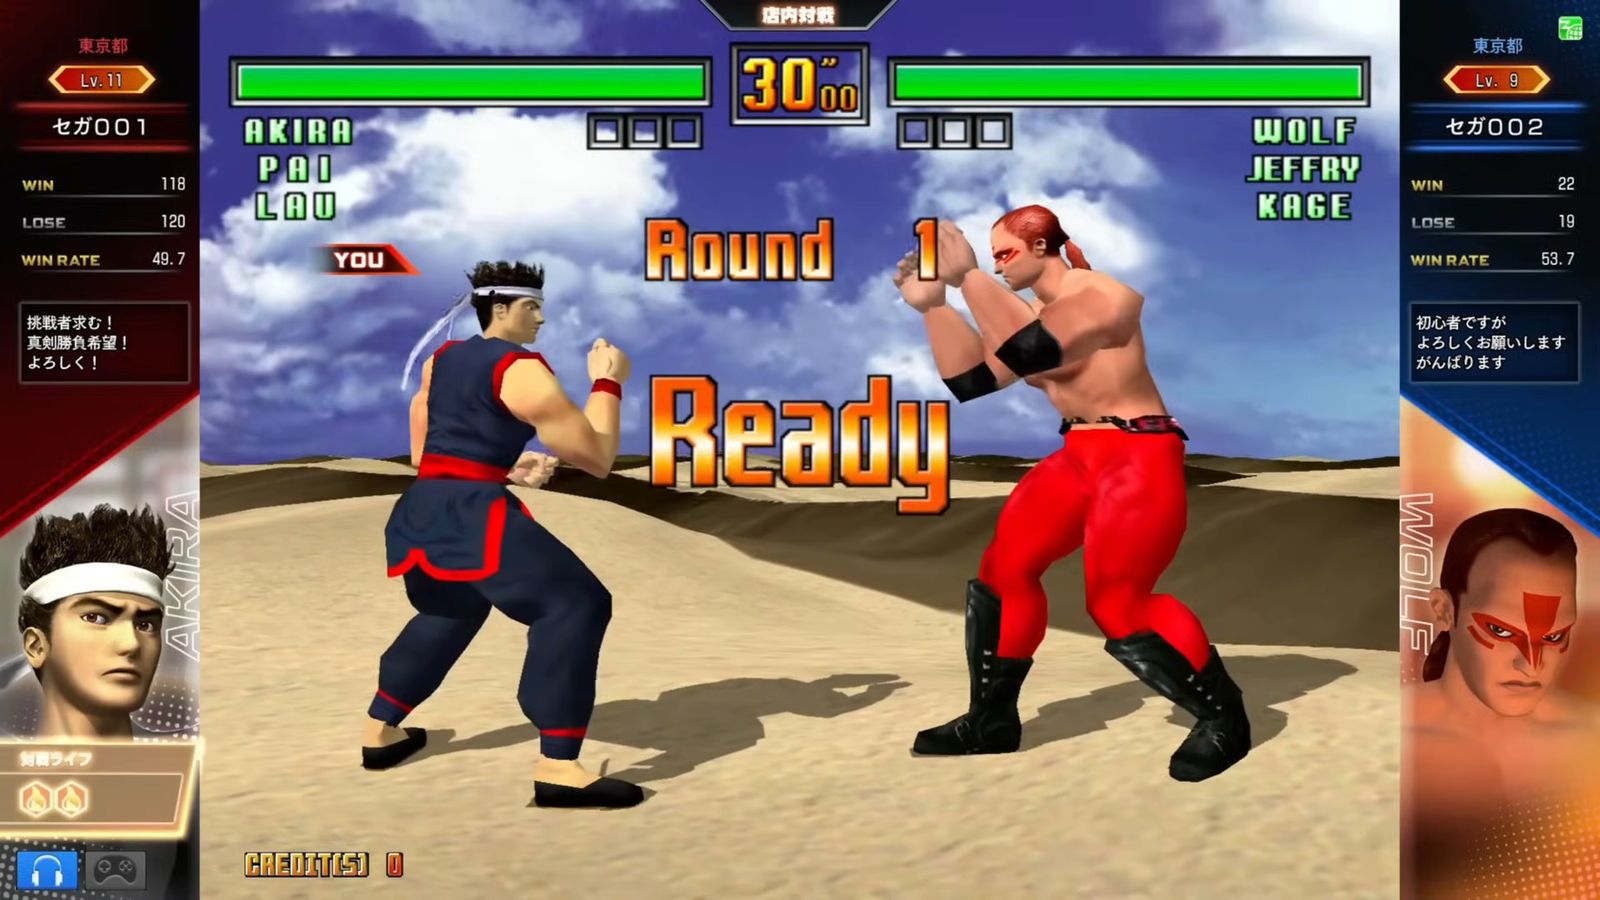 Virtua Fighter 3tb arcade fight